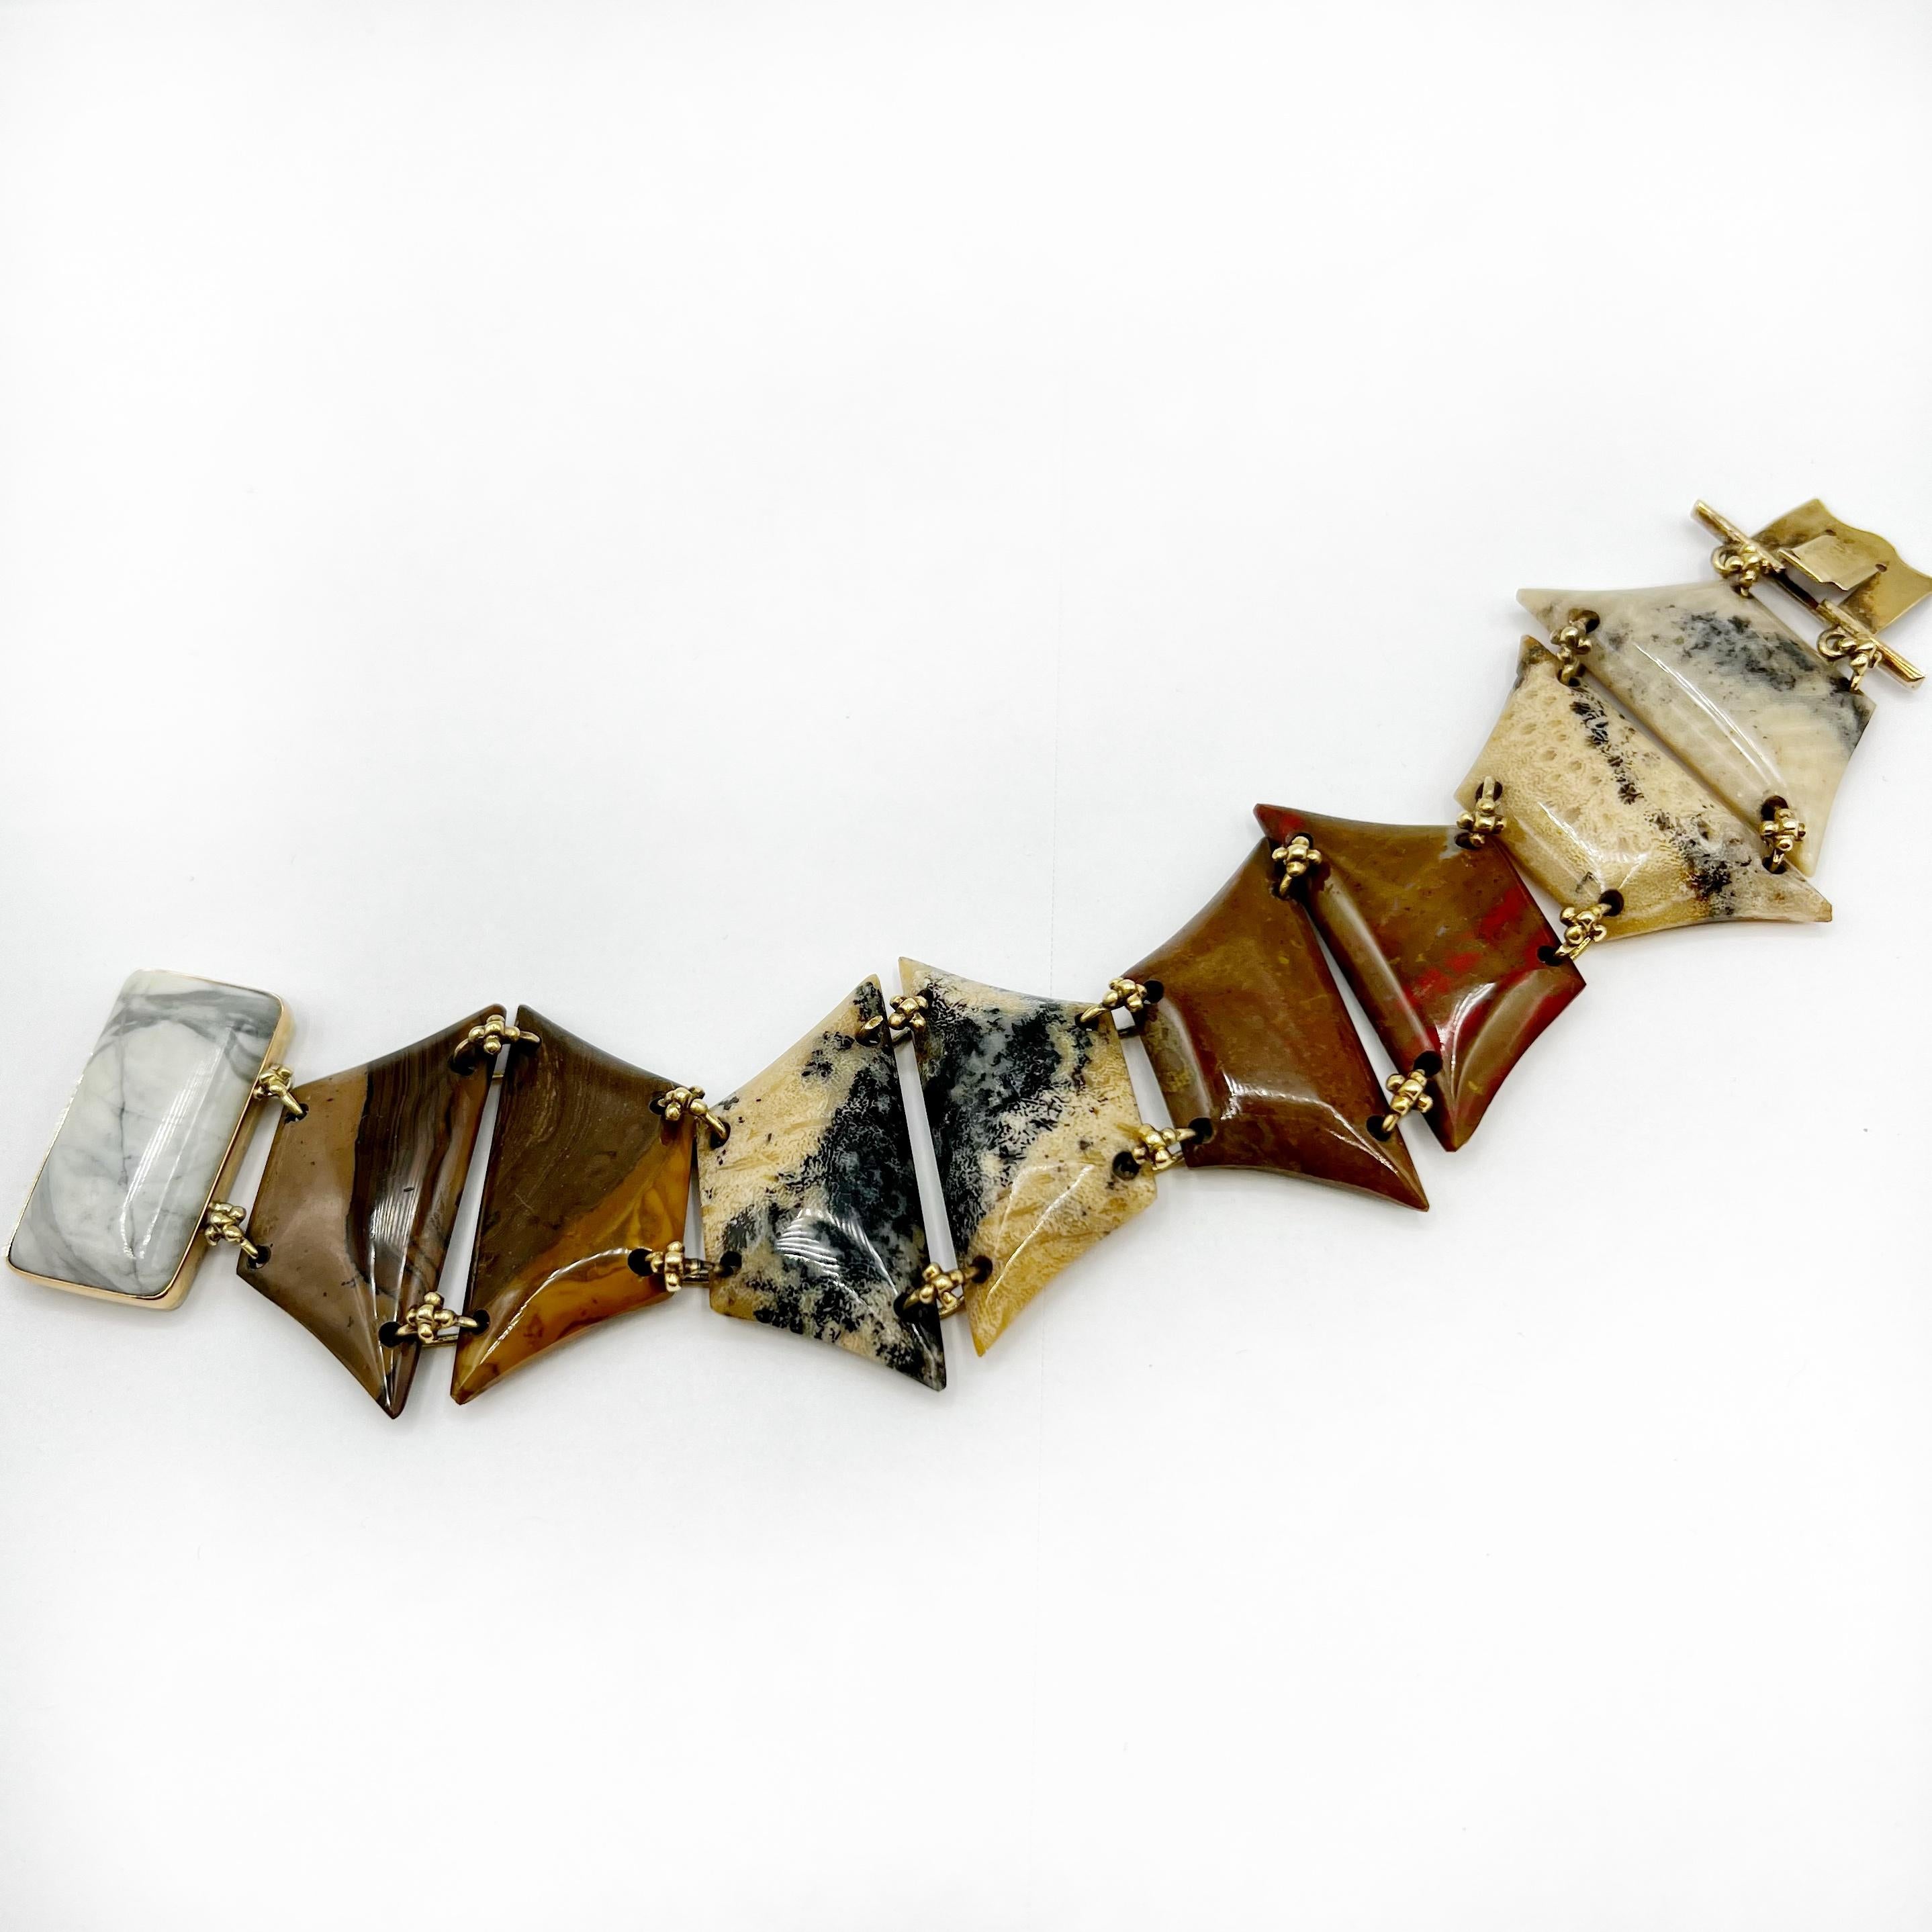 Dies ist eine schöne viktorianische schottischen Achat Armband zusammen mit 15 Karat Gelbgold floralen Links verbunden. Jeder Achat ist ein absolutes Unikat mit verschiedenen Erdtönen von tiefen Grüntönen bis hin zu Braun-, Rot- und Cremetönen. Die